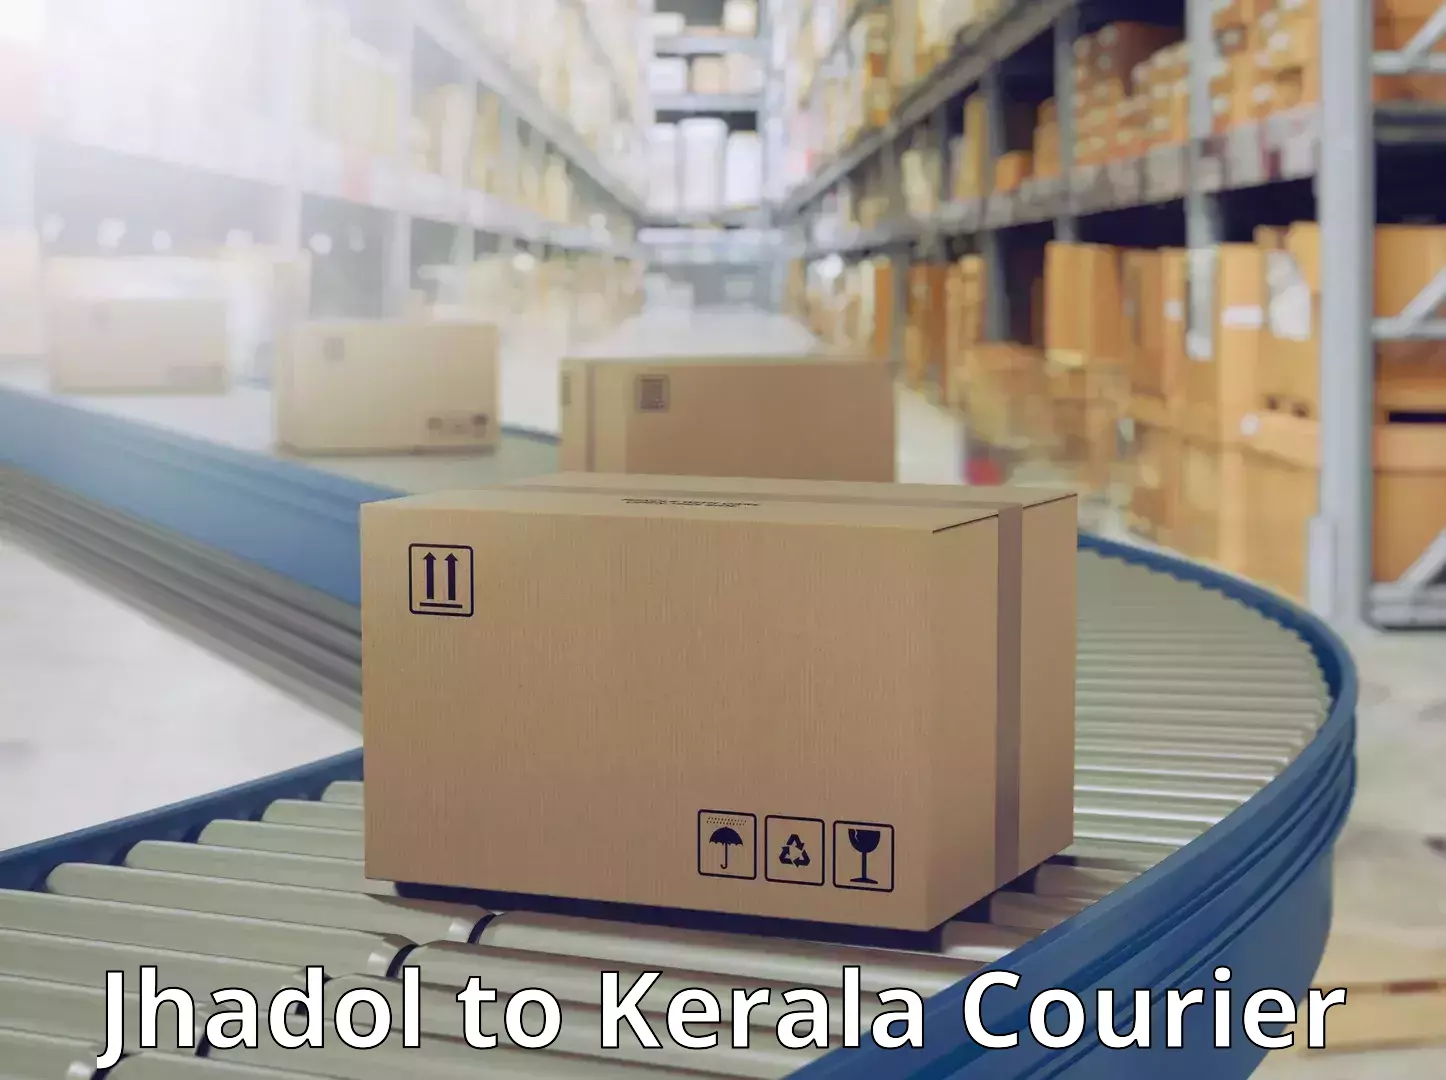 Budget-friendly shipping Jhadol to Chavara